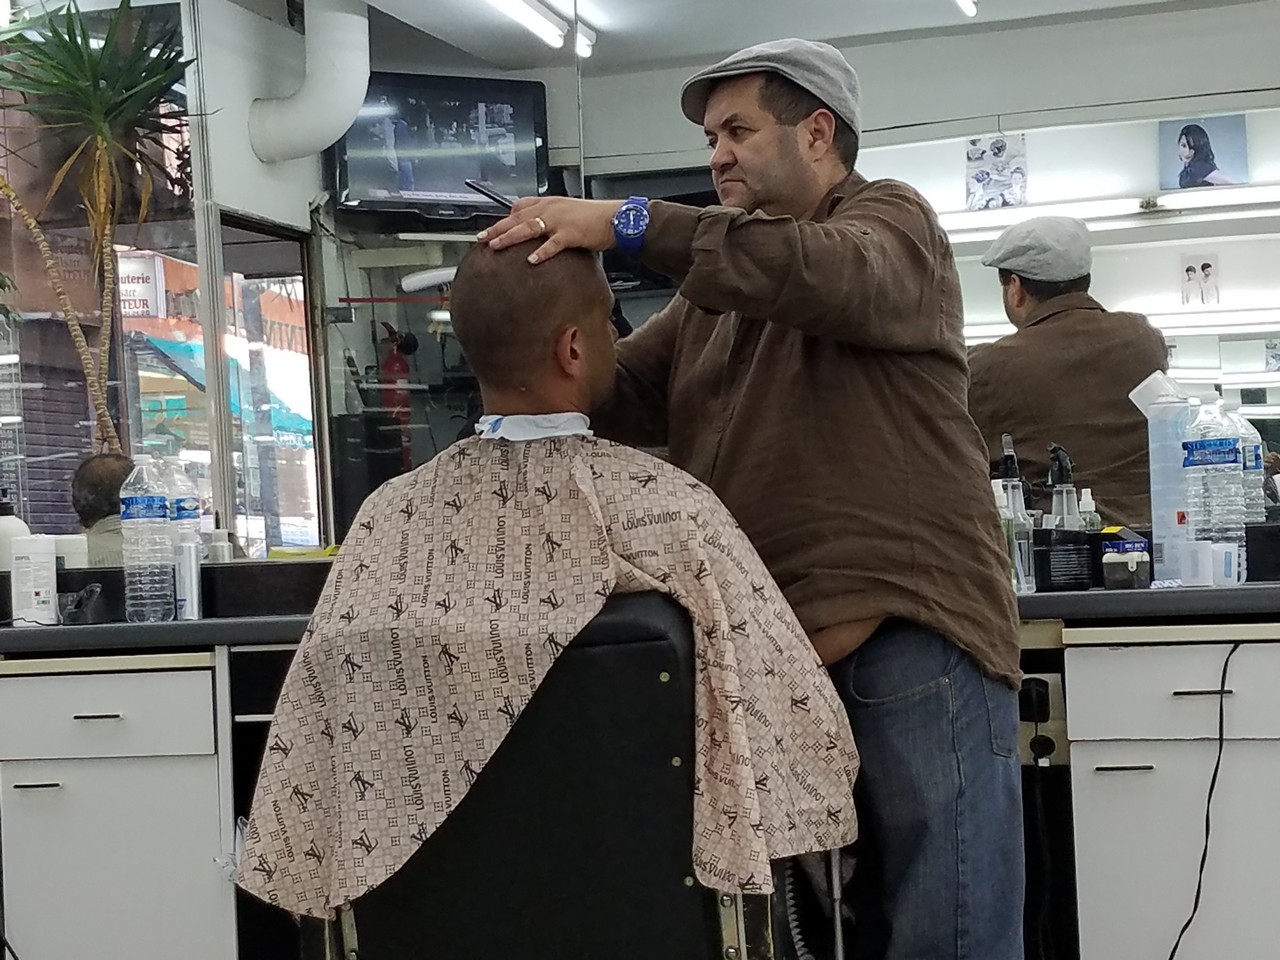 a man cutting a man's hair